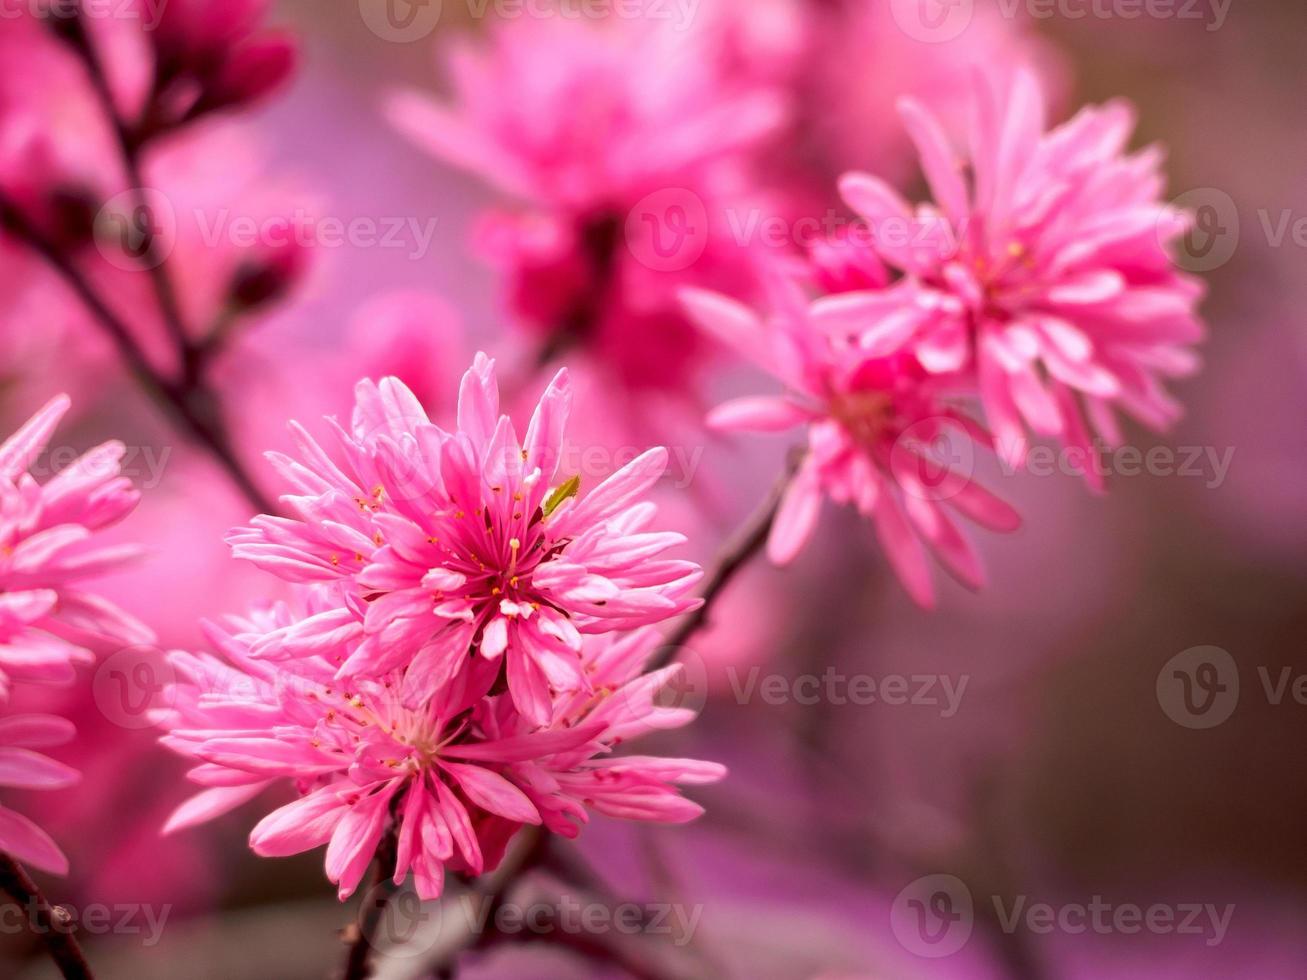 roze kersenbloesem met veel bloemblaadjes foto